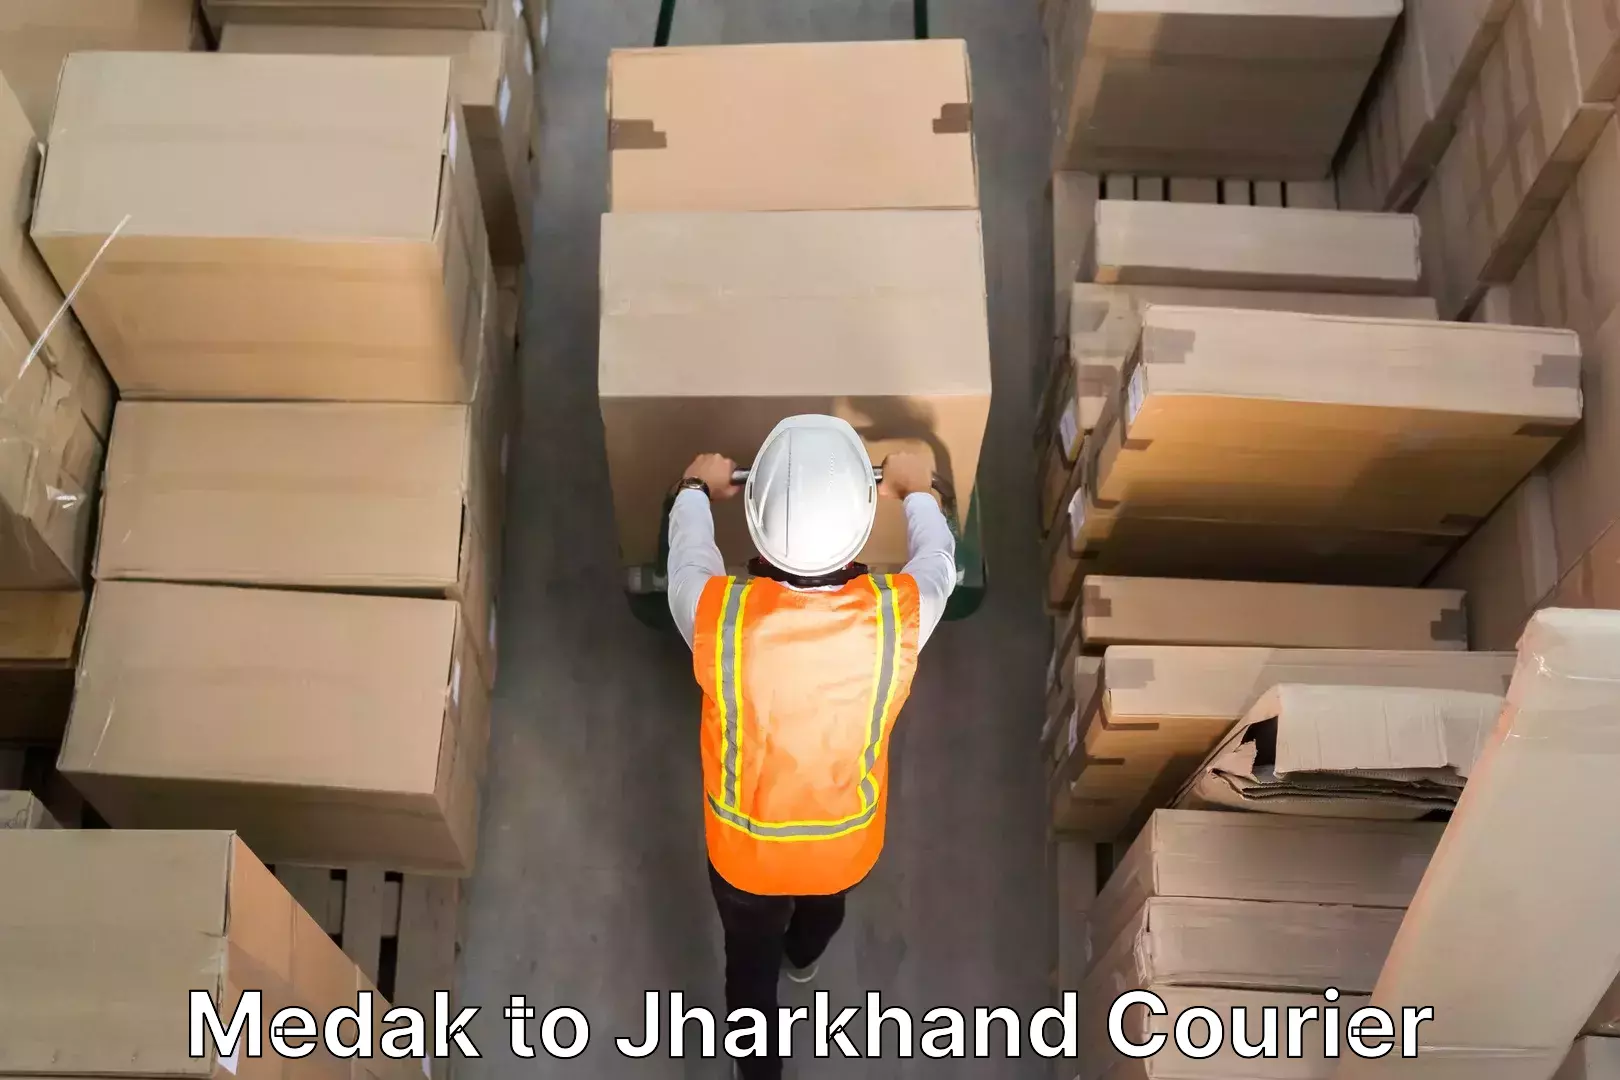 Household goods transport service Medak to Jharkhand